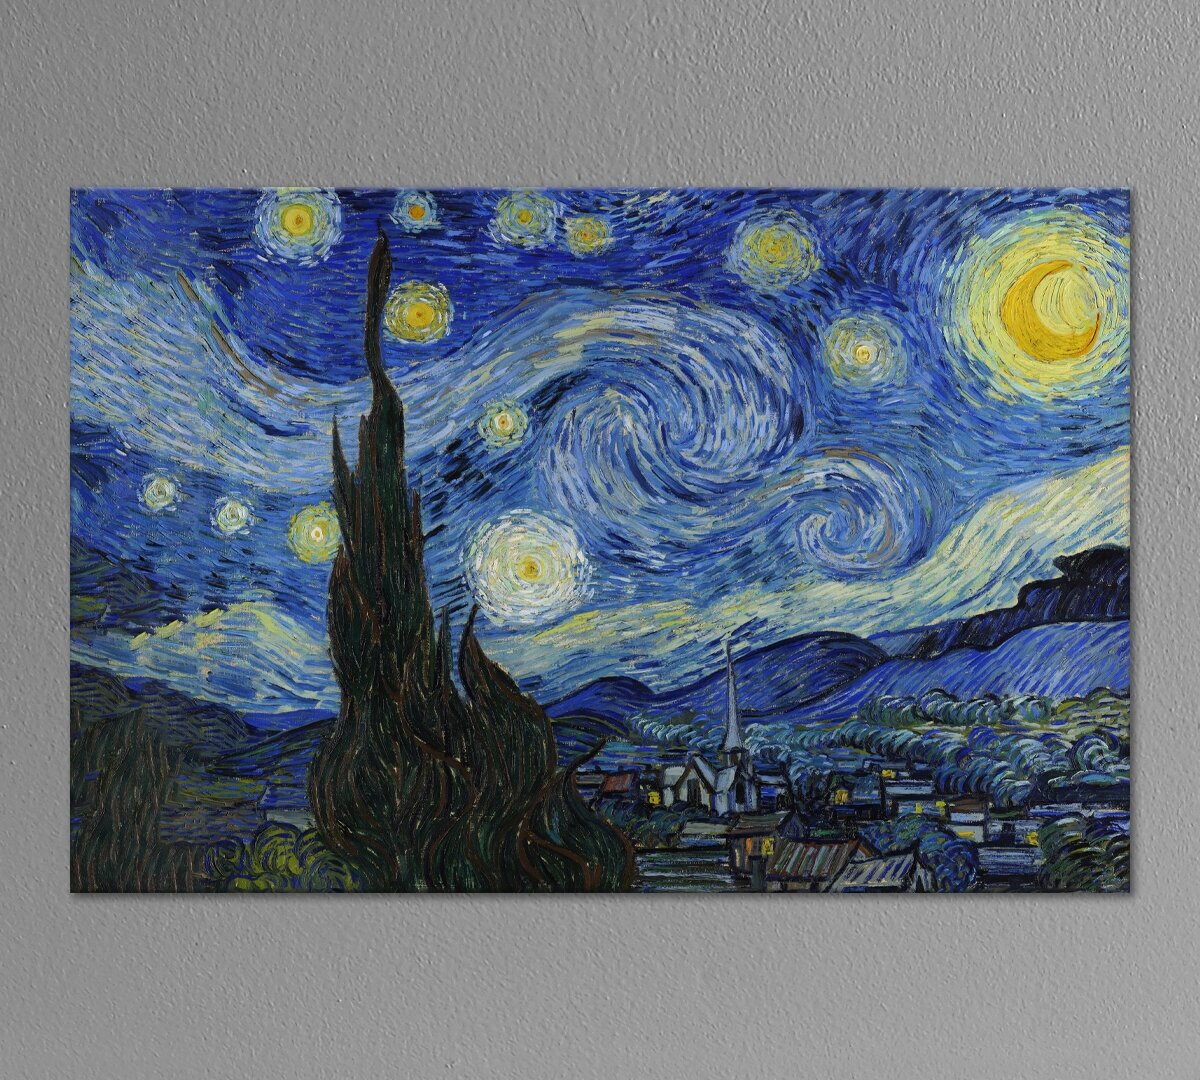 Картина для интерьера "Звездная ночь" Винсент Ван Гог 40х60 см. натуральный холст. Коллекция - зарубежная живопись, импрессионизм, постимпрессионизм.